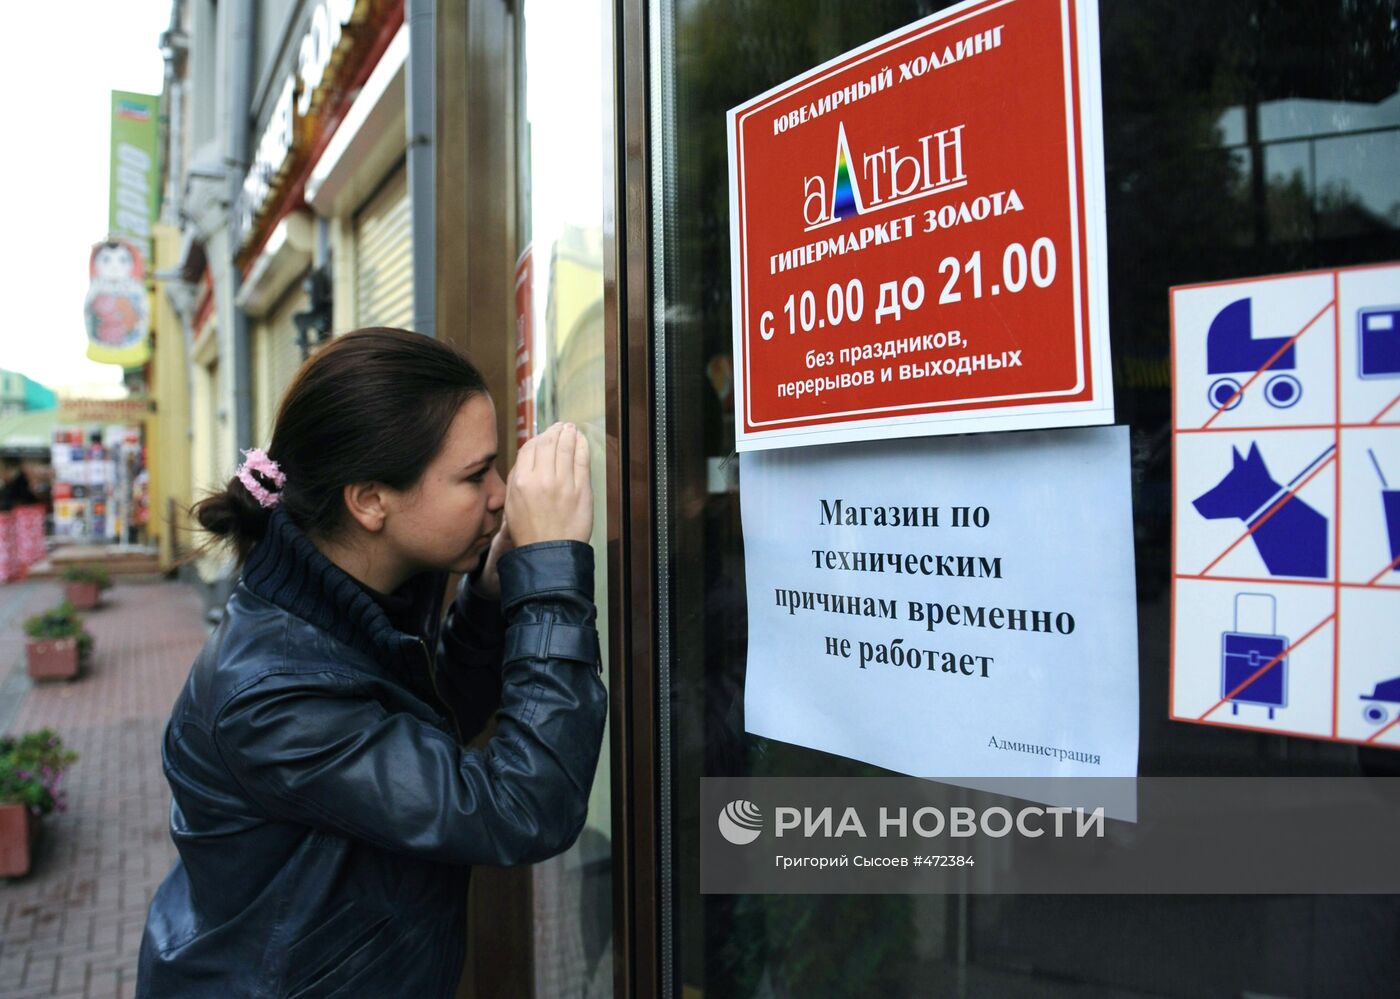 В Москве закрылись магазины сети "Алтын"